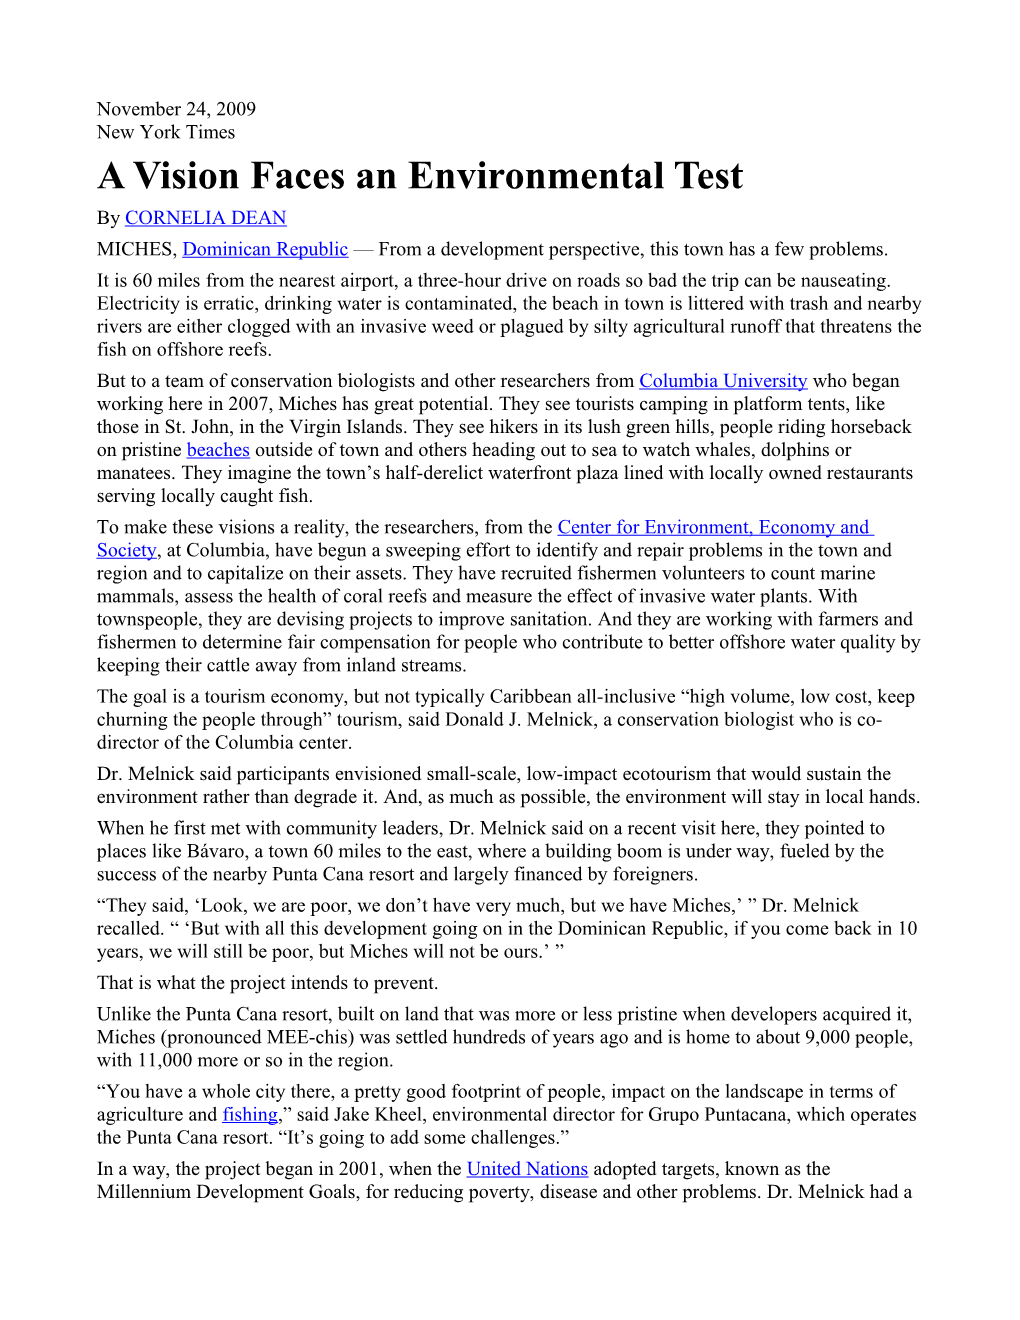 A Vision Faces an Environmental Test